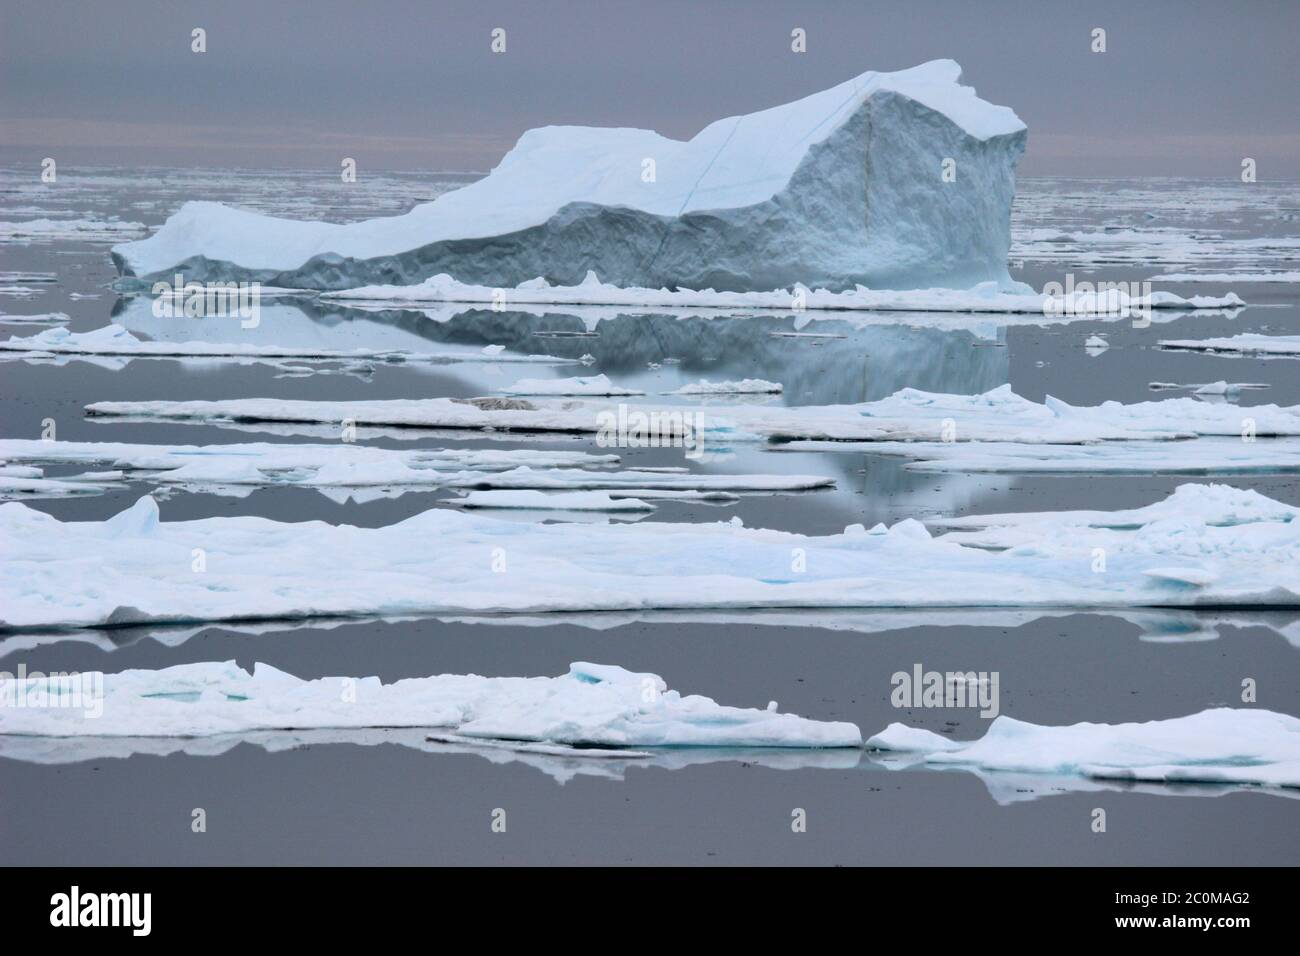 Berg de glace parmi les flotteurs de glace, détroit de Davis, côte est de l'île de Baffin, Nunavut, Canada vu du NGCC Amundsen Banque D'Images